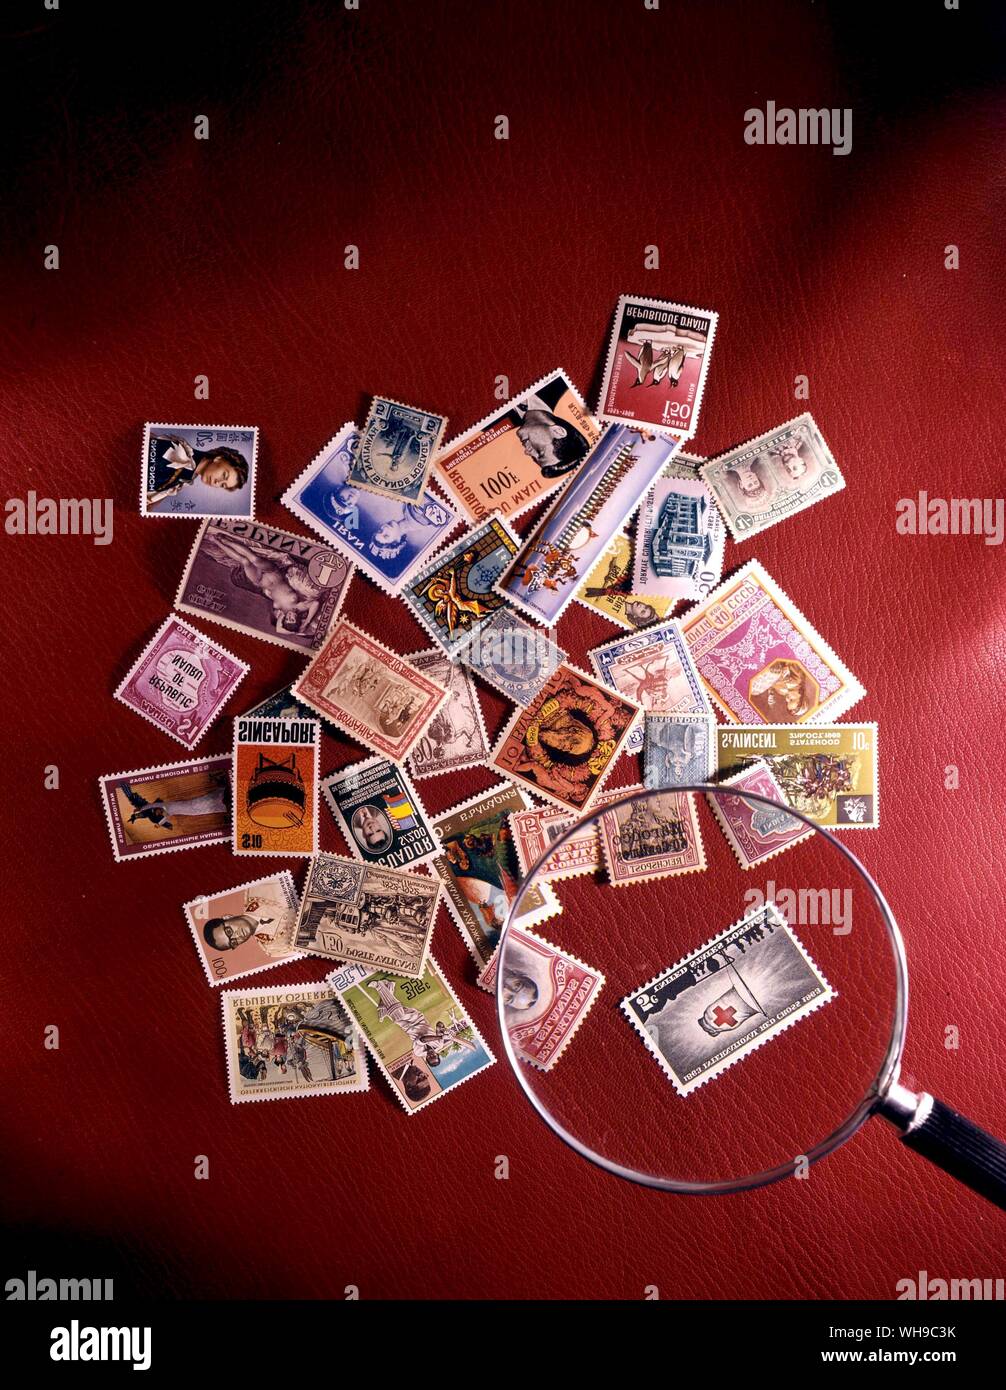 Una serie de sellos de todo el mundo al azar apilados en un montón con una lupa sobre un fondo rojo. Foto de stock